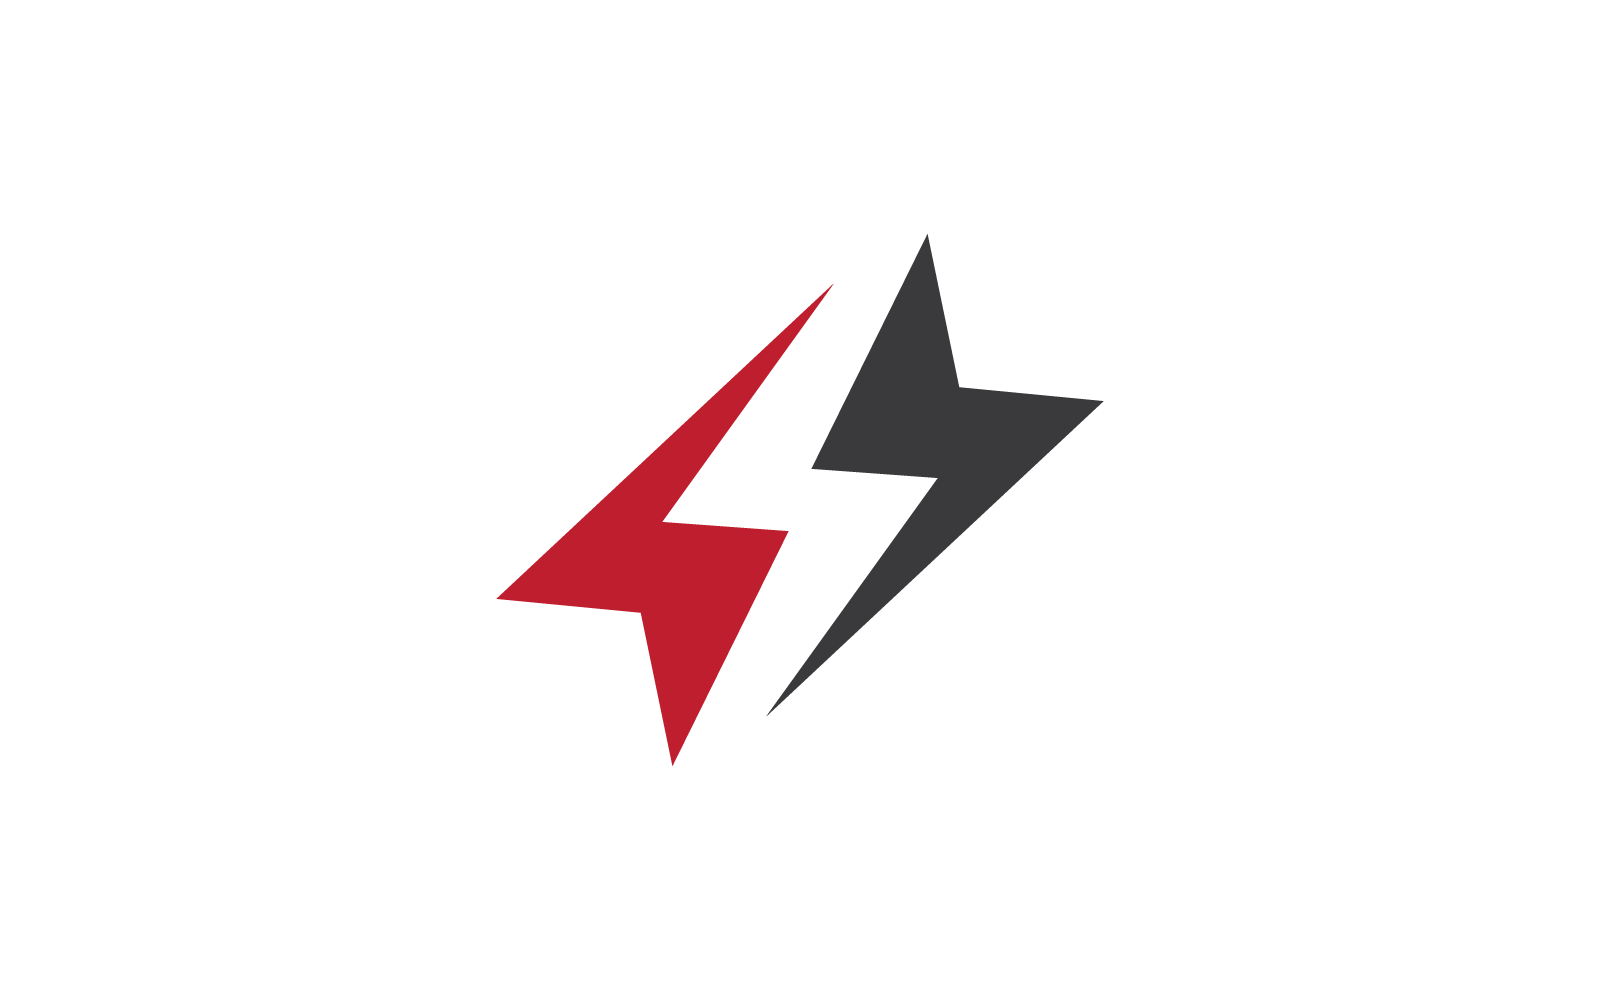 Power lightning power energy icon vector logo flat design